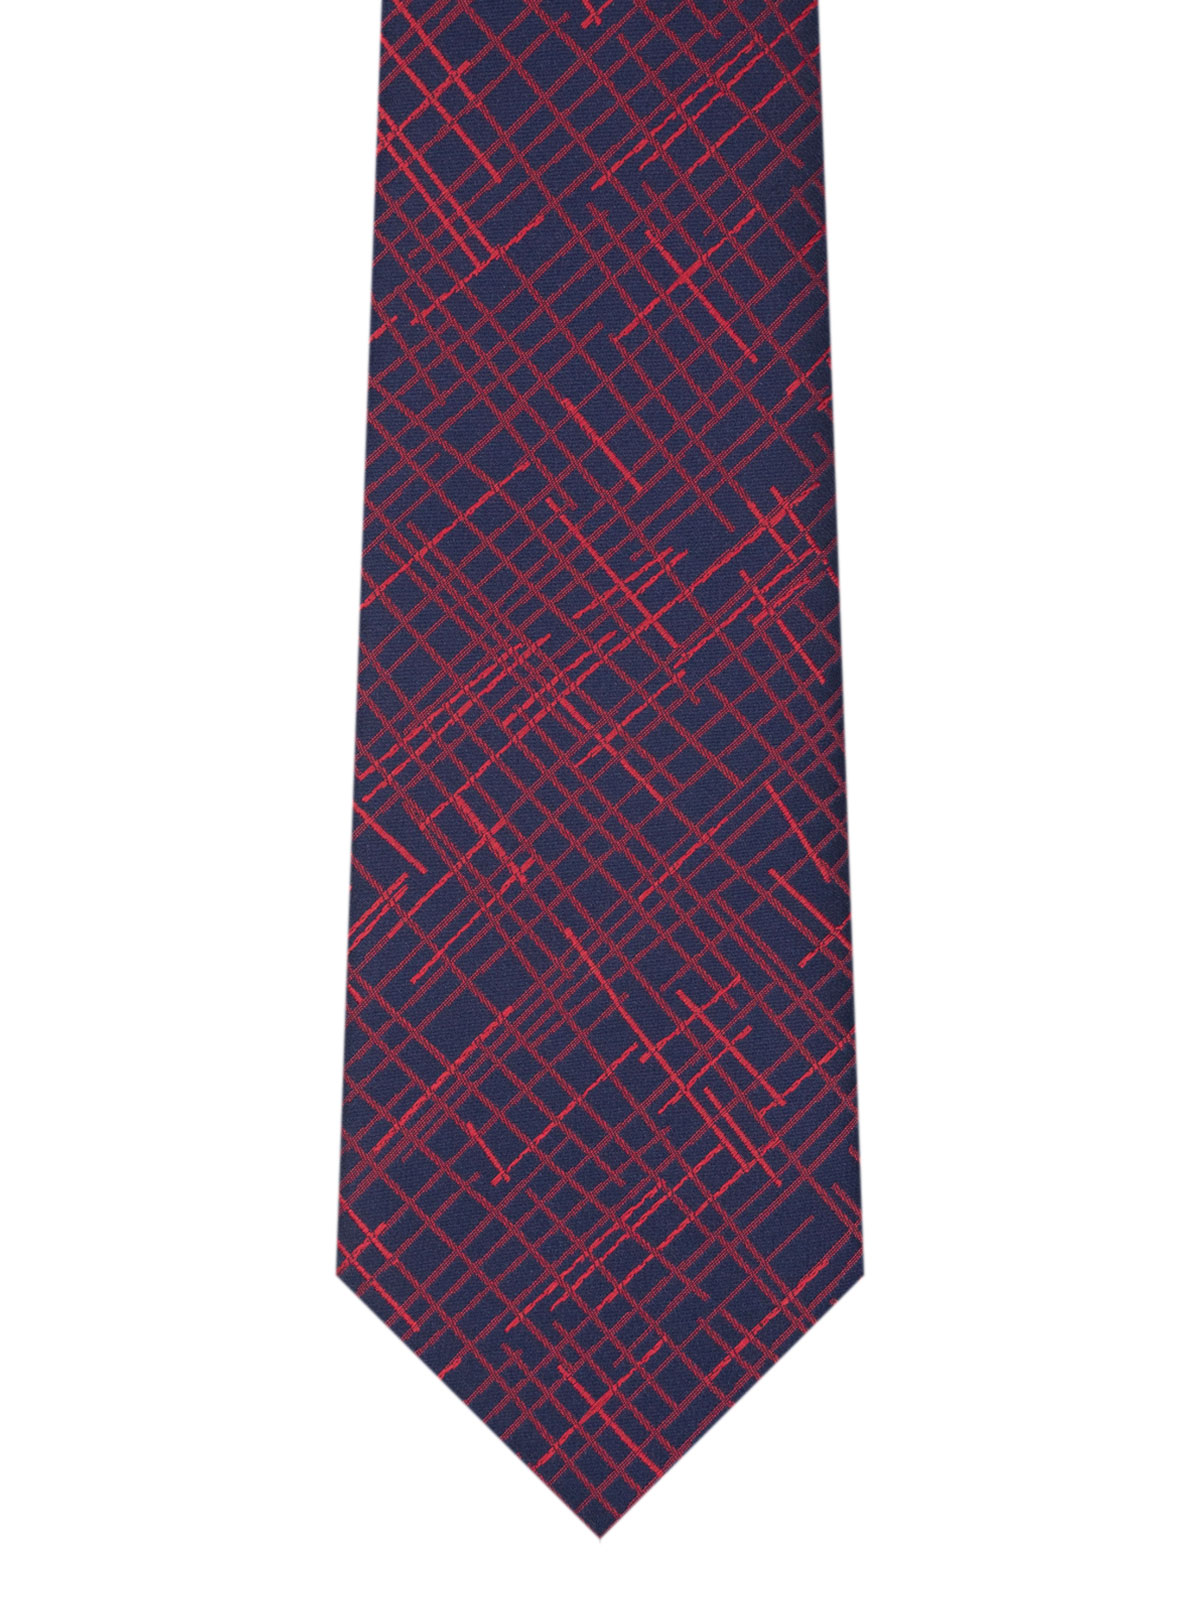 Σκούρα μπλε γραβάτα με κόκκινες γραμμές - 10186 - € 14.06 img2